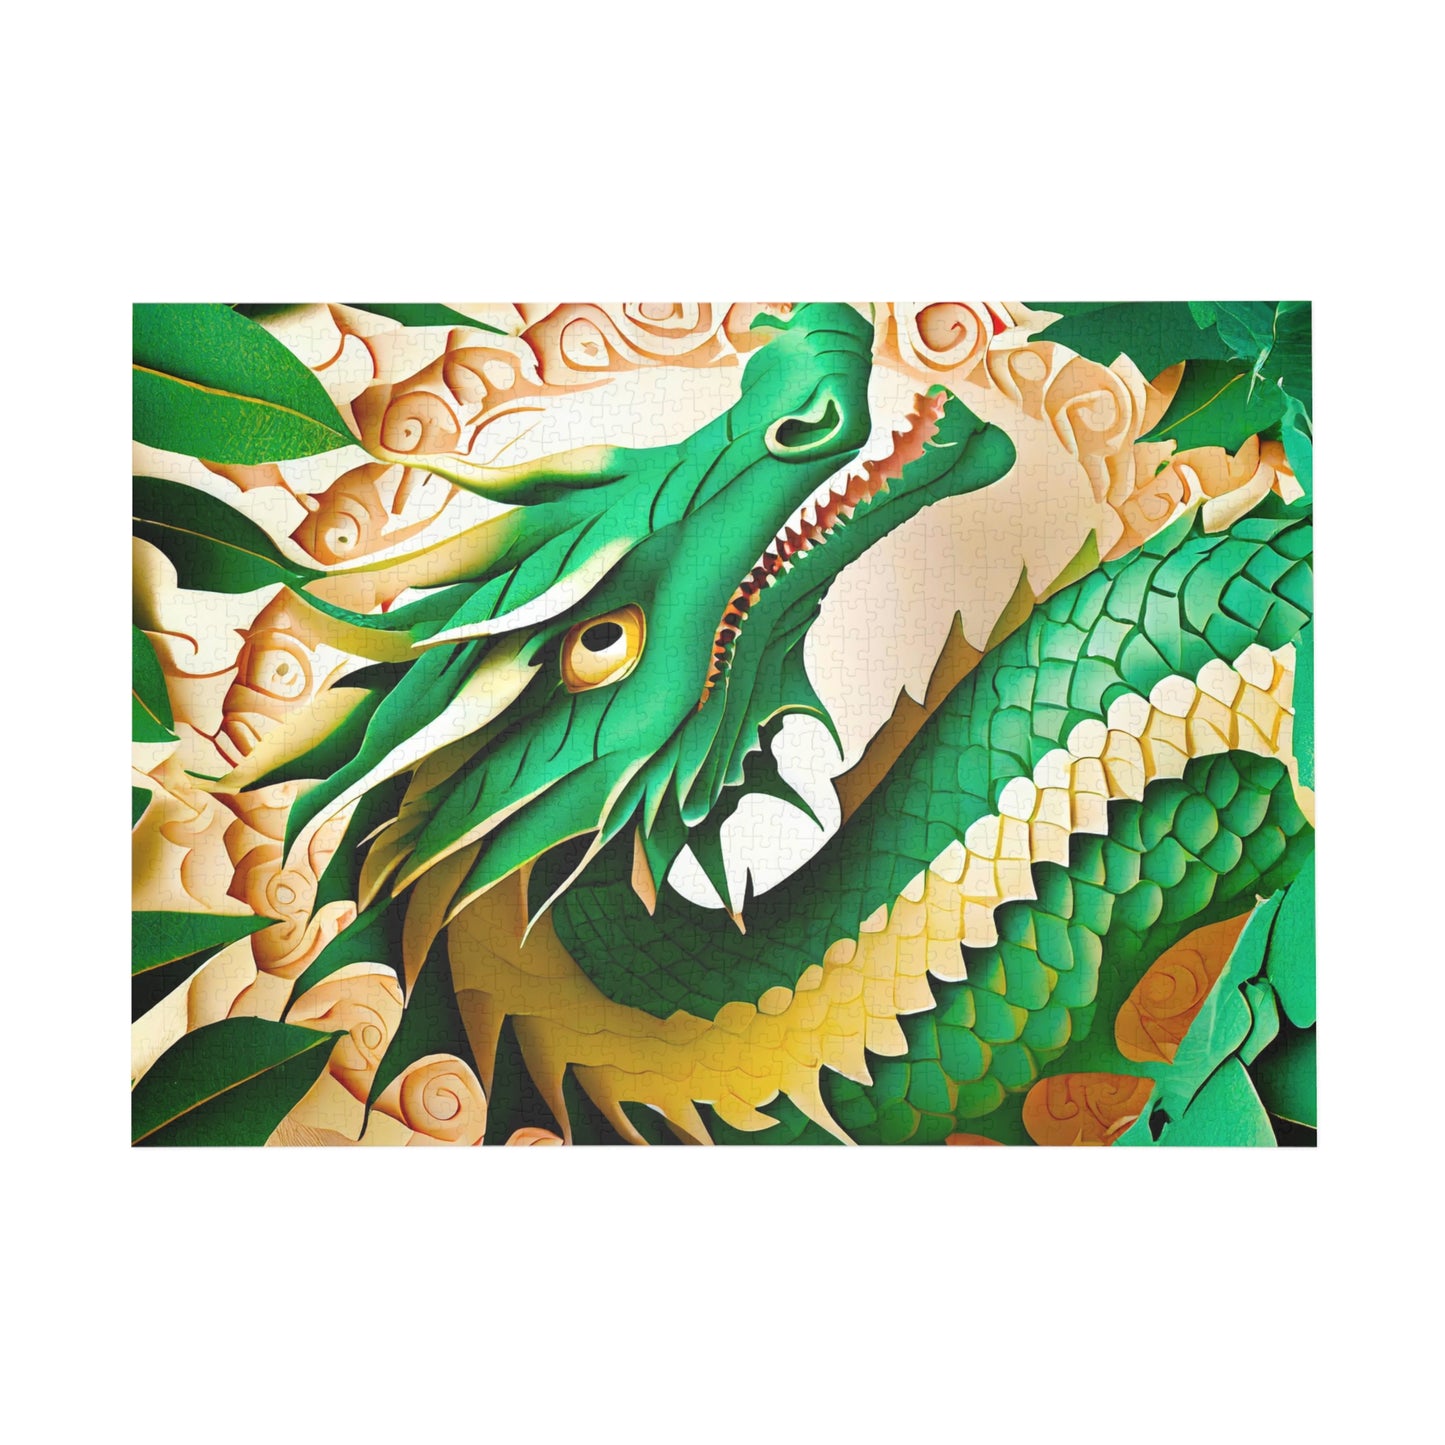 Dragon1 - Puzzle (500, 1000-Piece)